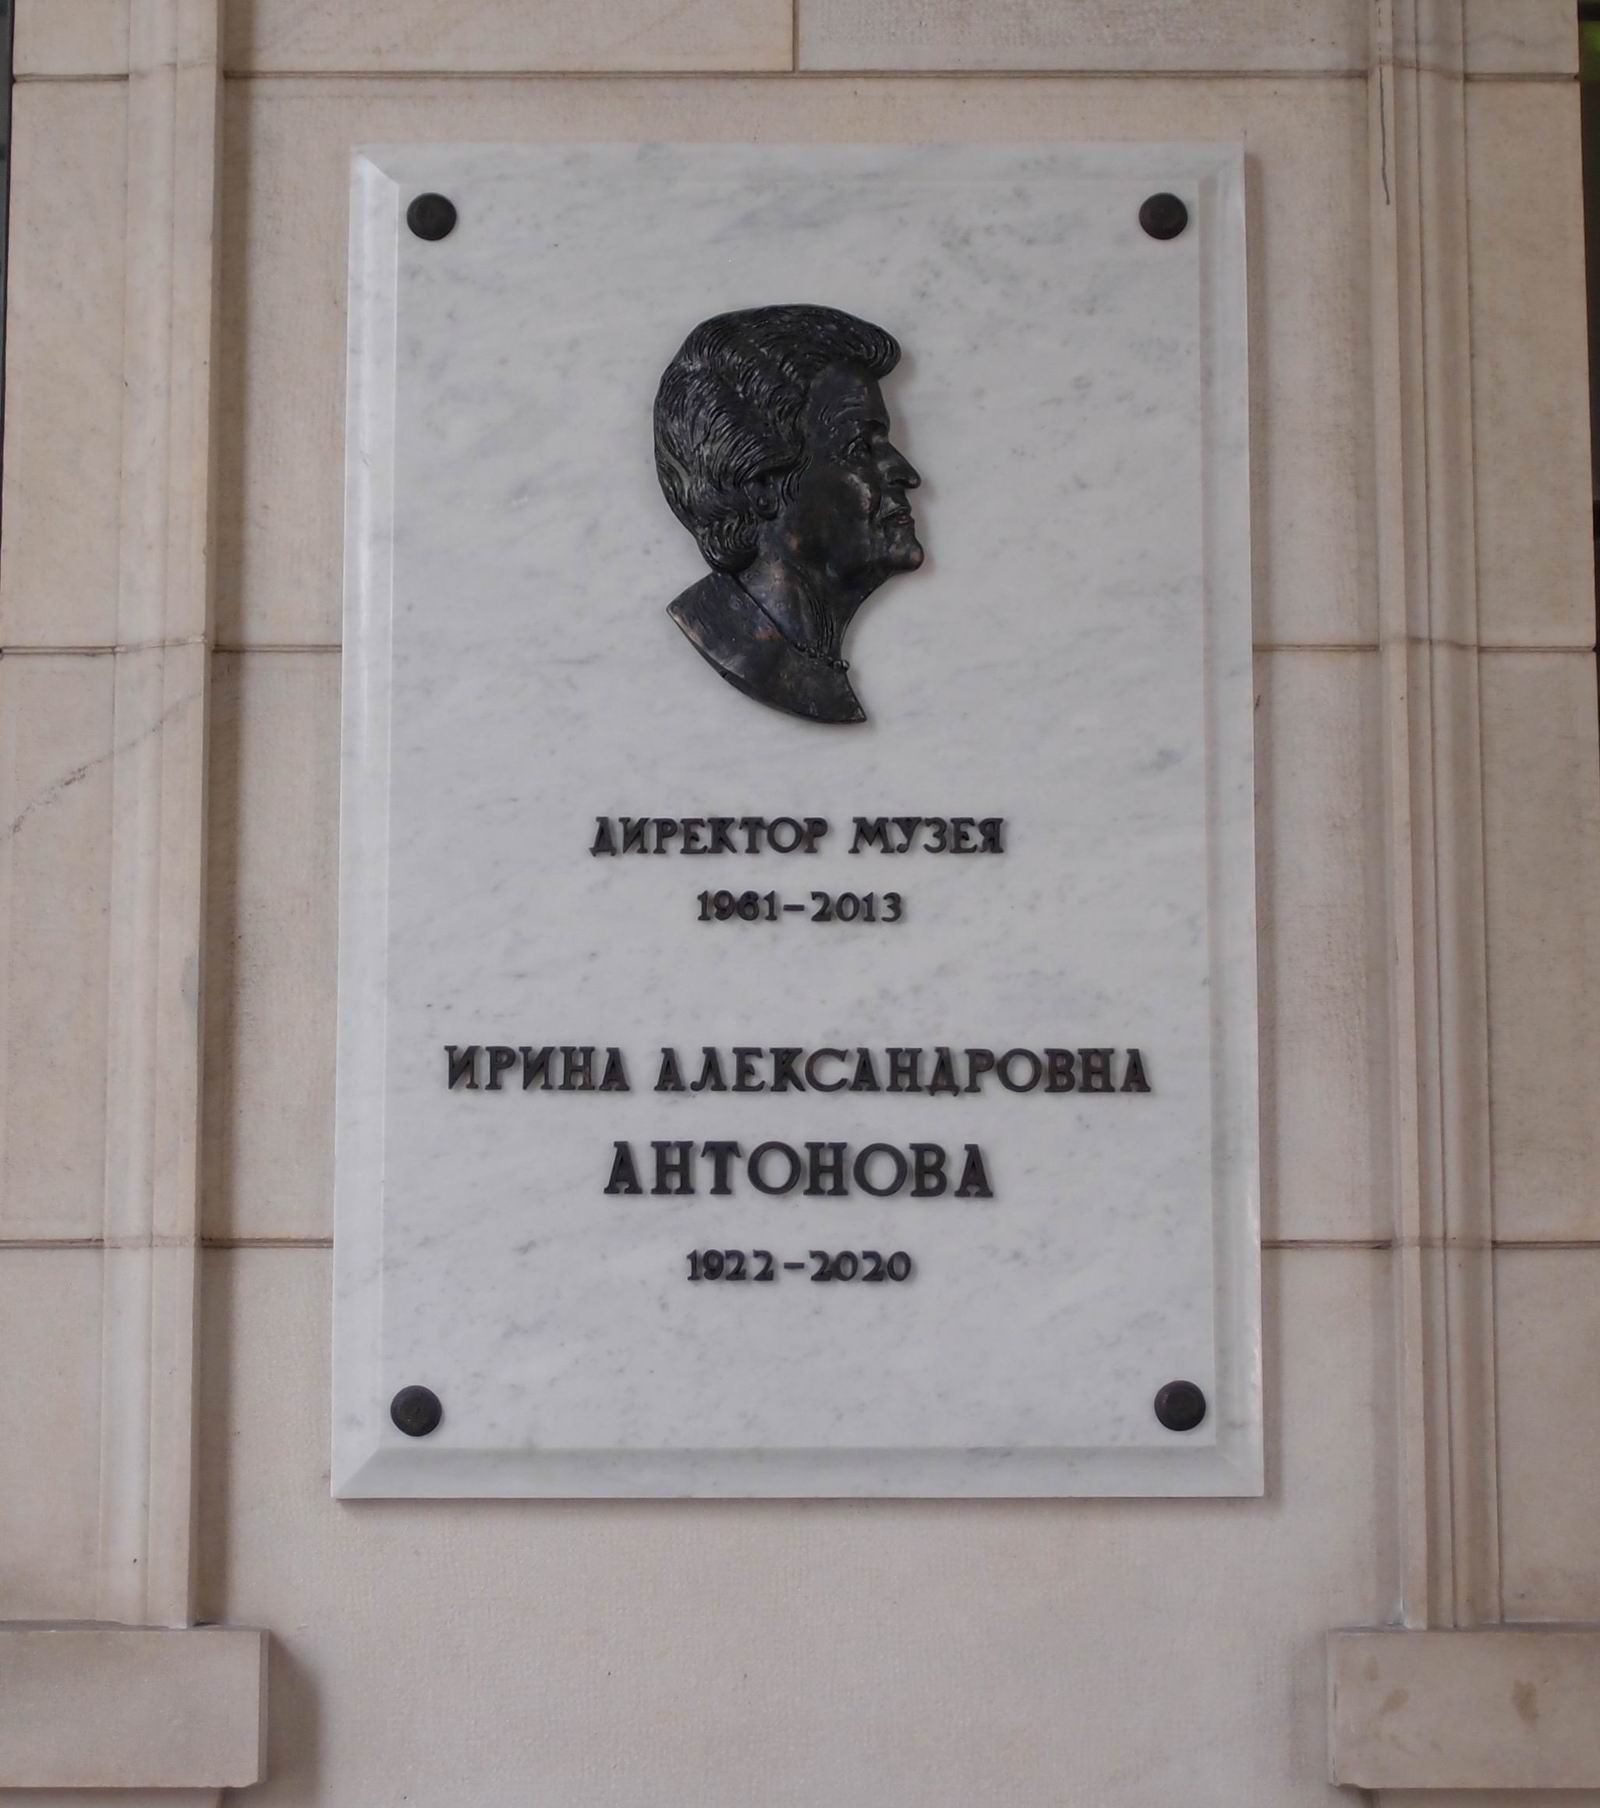 Мемориальная доска Антоновой И.А. (1922–2020), ск. Г.В.Франгулян, на улице Волхонка, дом 12 (ГМИИ им. А.С.Пушкина), открыта в марте 2021.